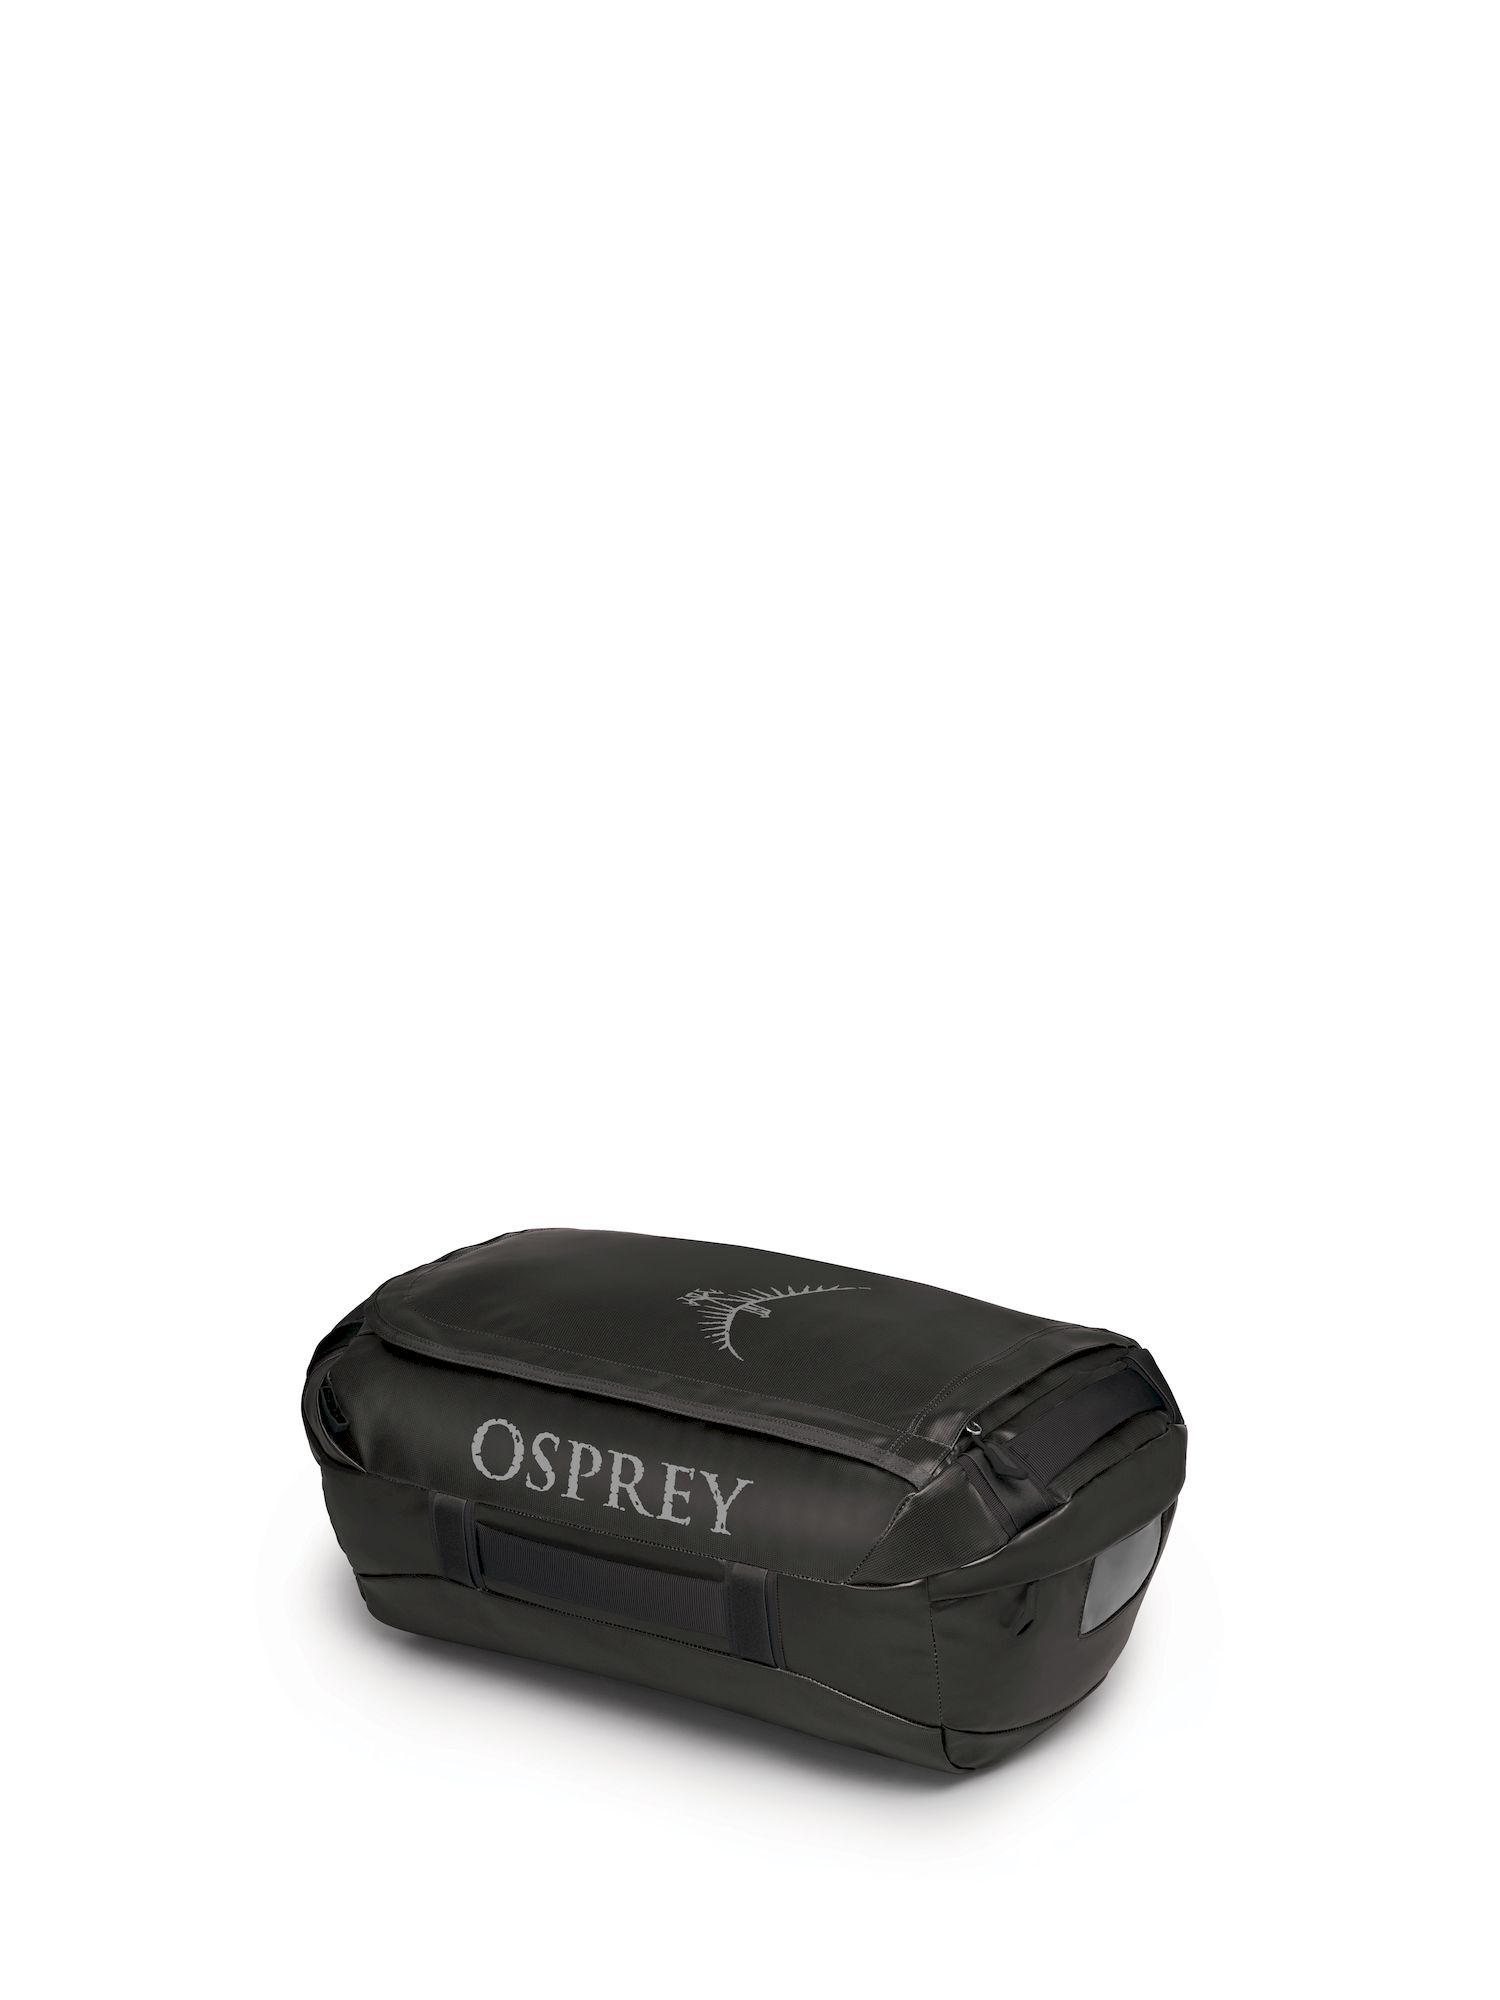 Osprey - Transporter 40 - Borsa da viaggio